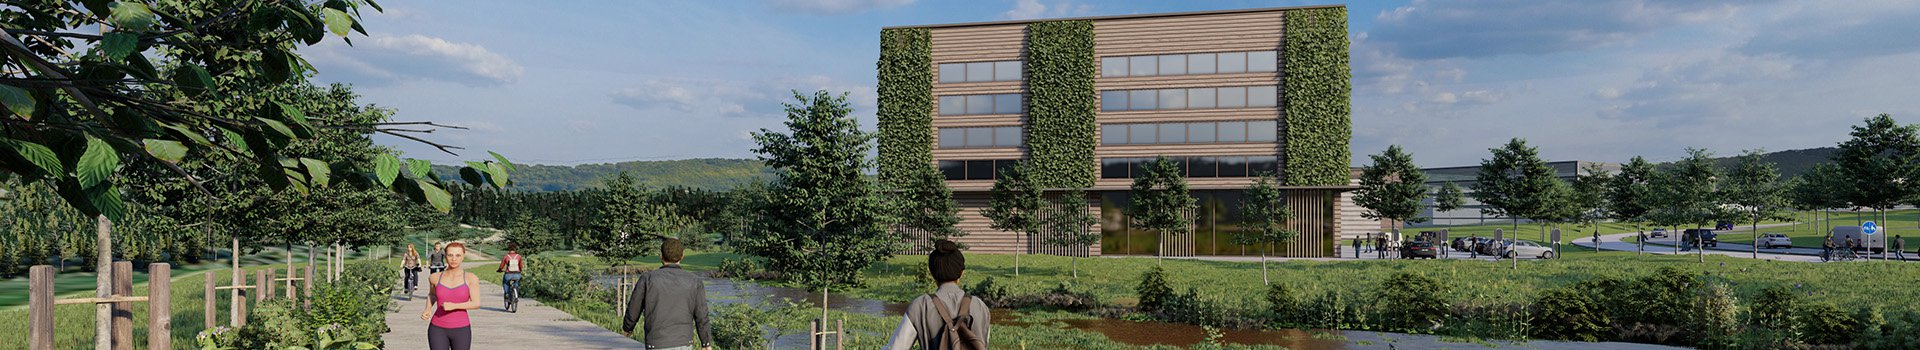 Visualisierung: Gebäude, Weg mit Menschen, Davor Grünanlage mit Teich